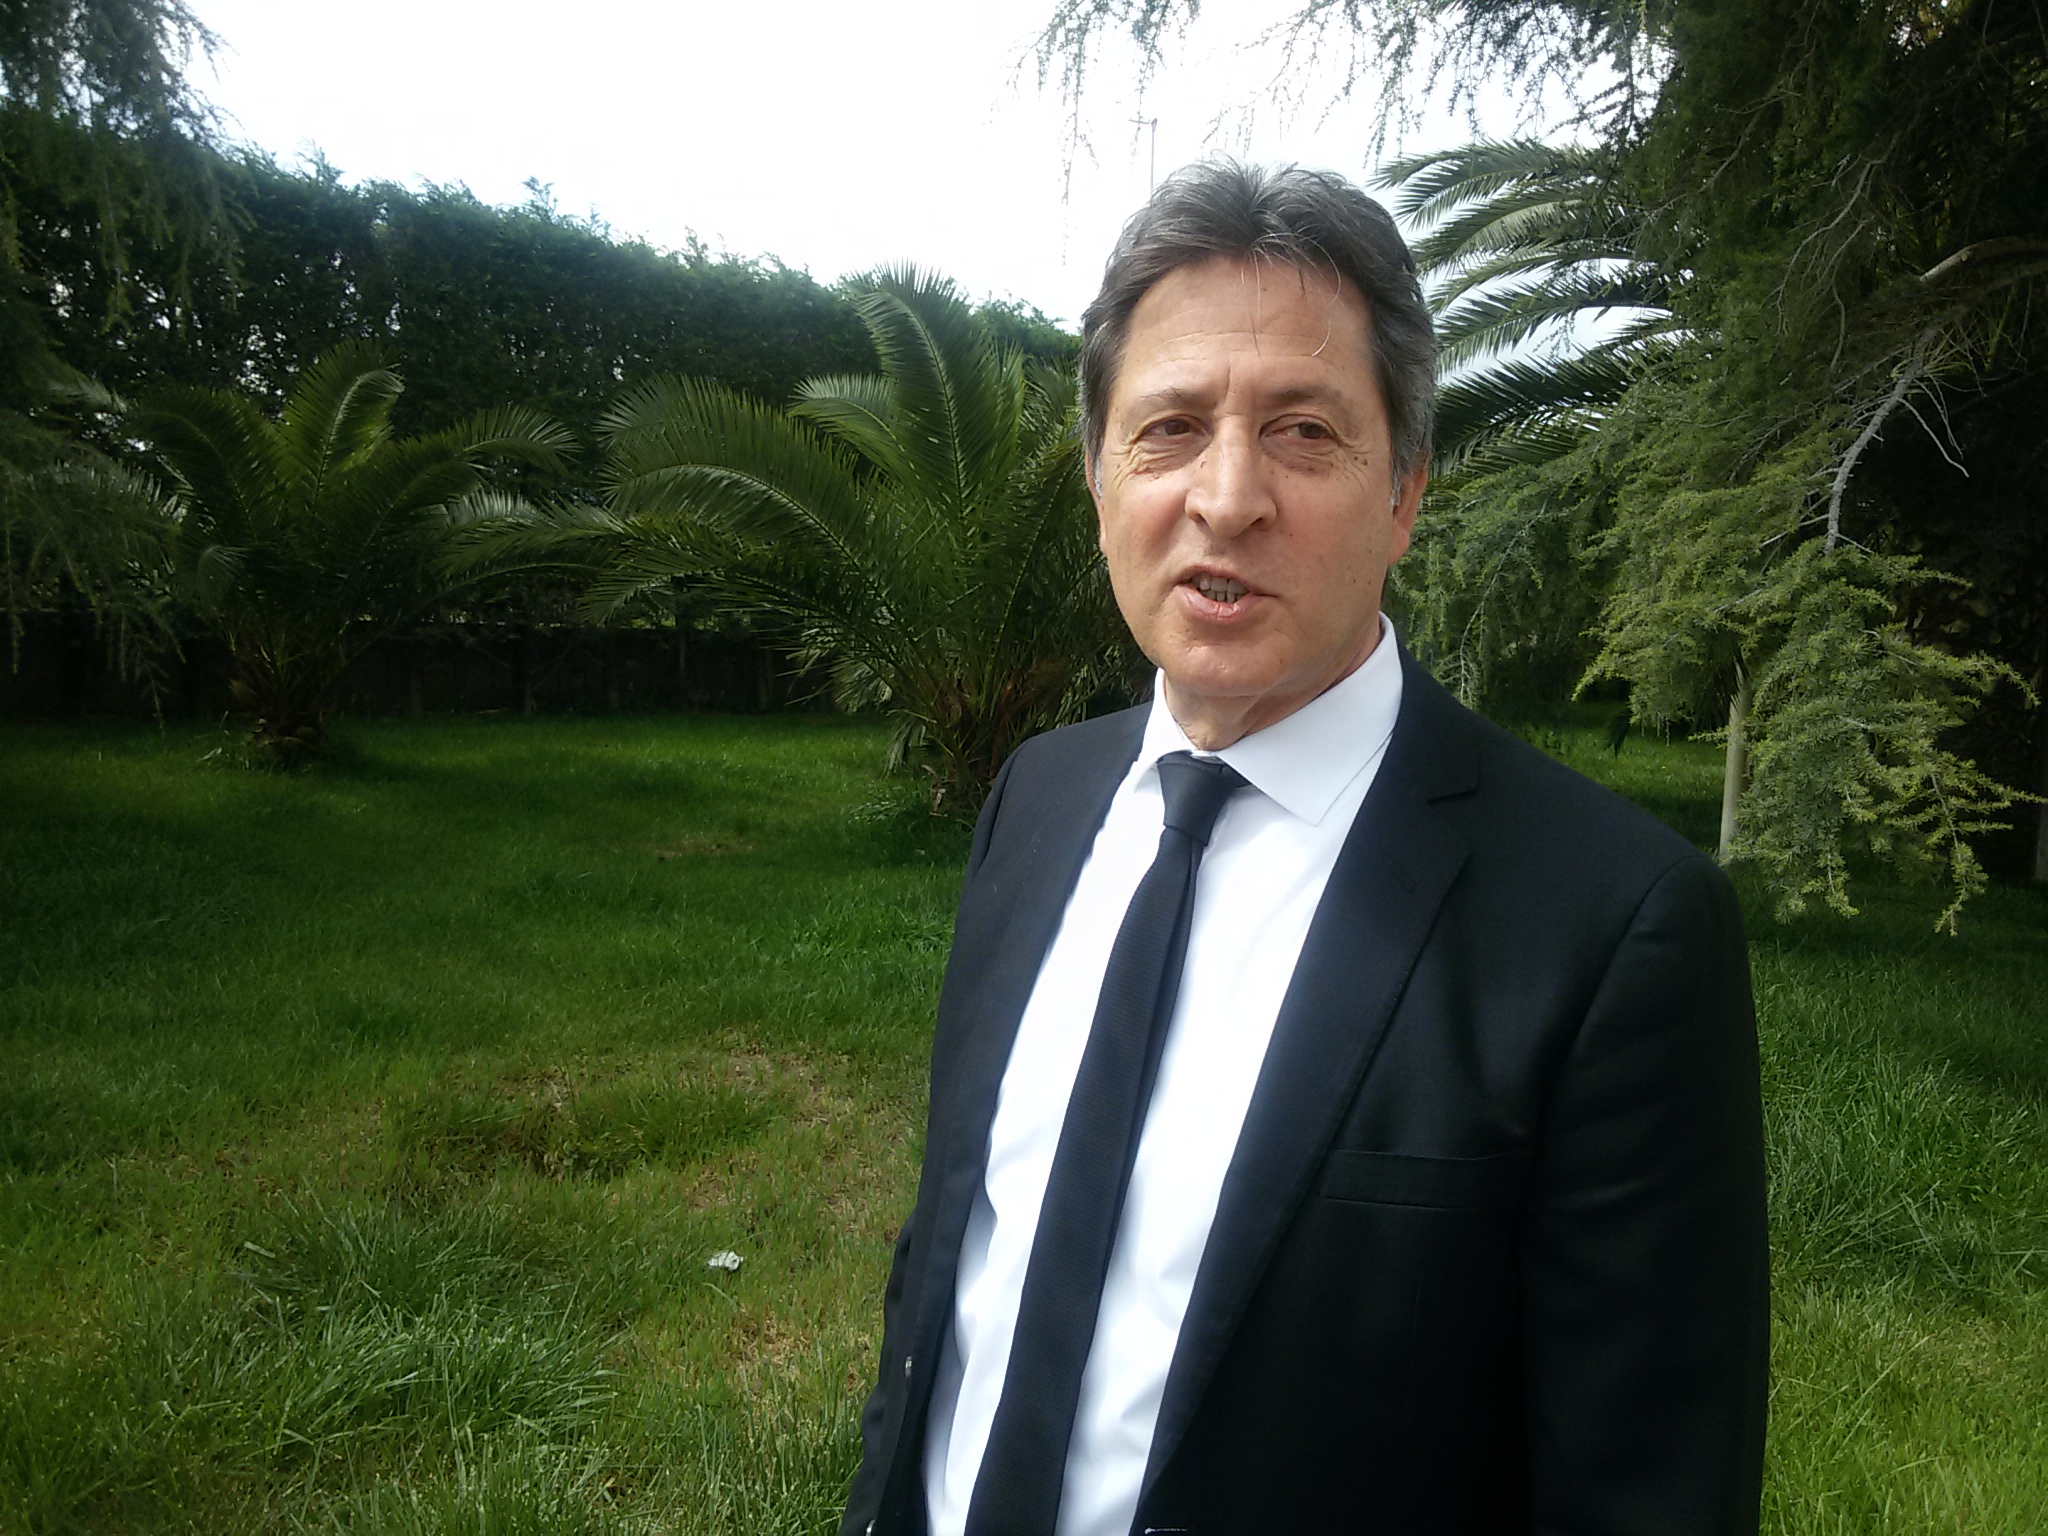 Cerignola: in campo scende il patron Michele Grieco. “Mi aspetto tenacia e spirito di sacrificio”